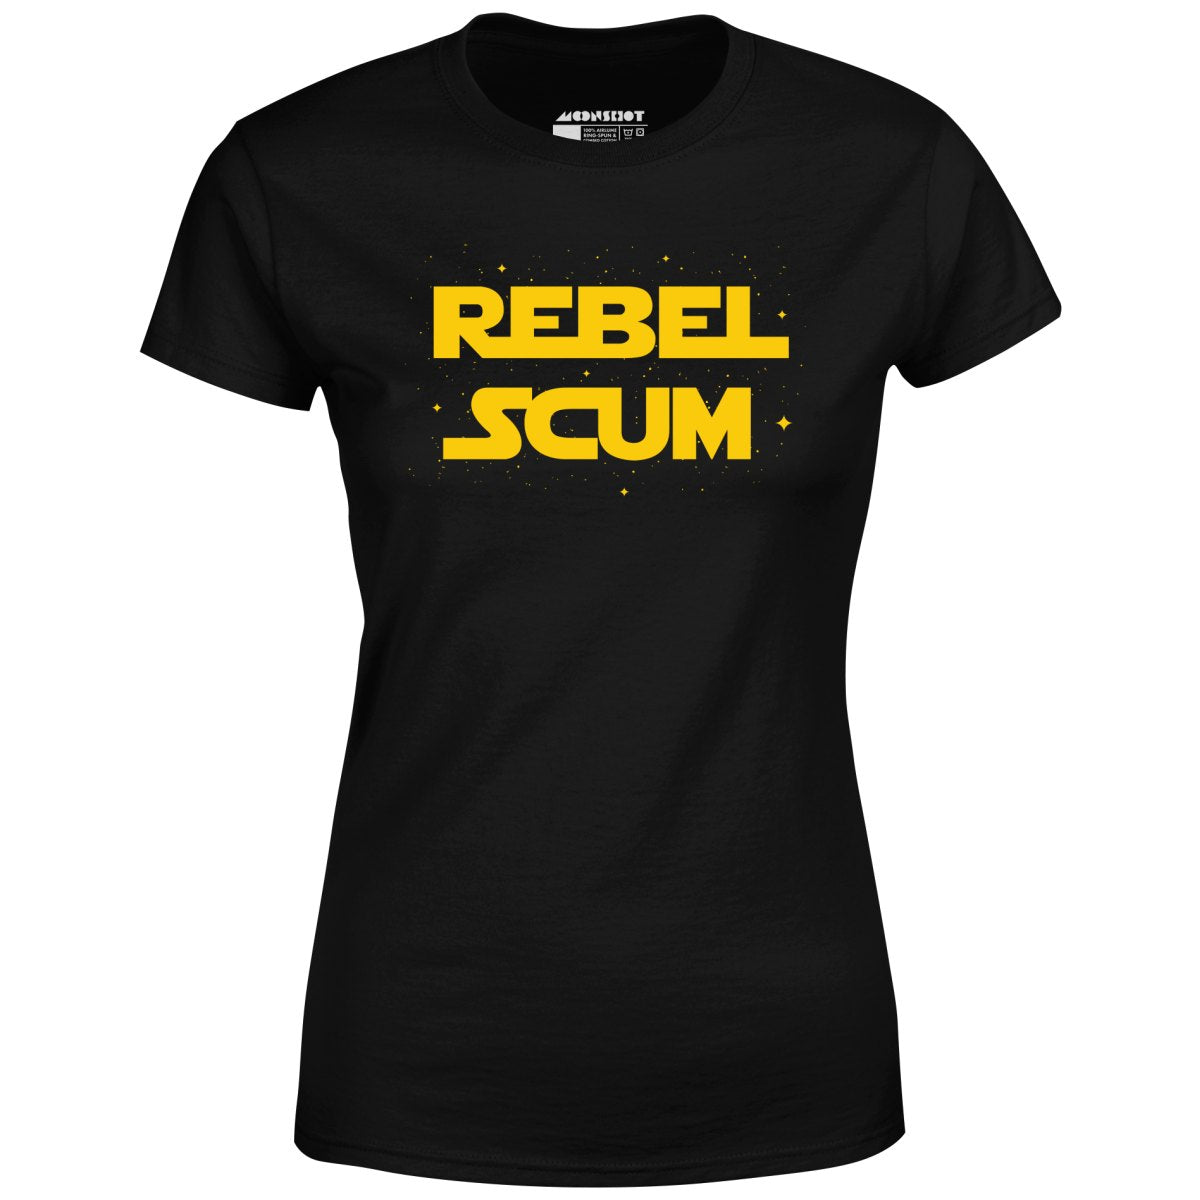 Rebel Scum - Women's T-Shirt